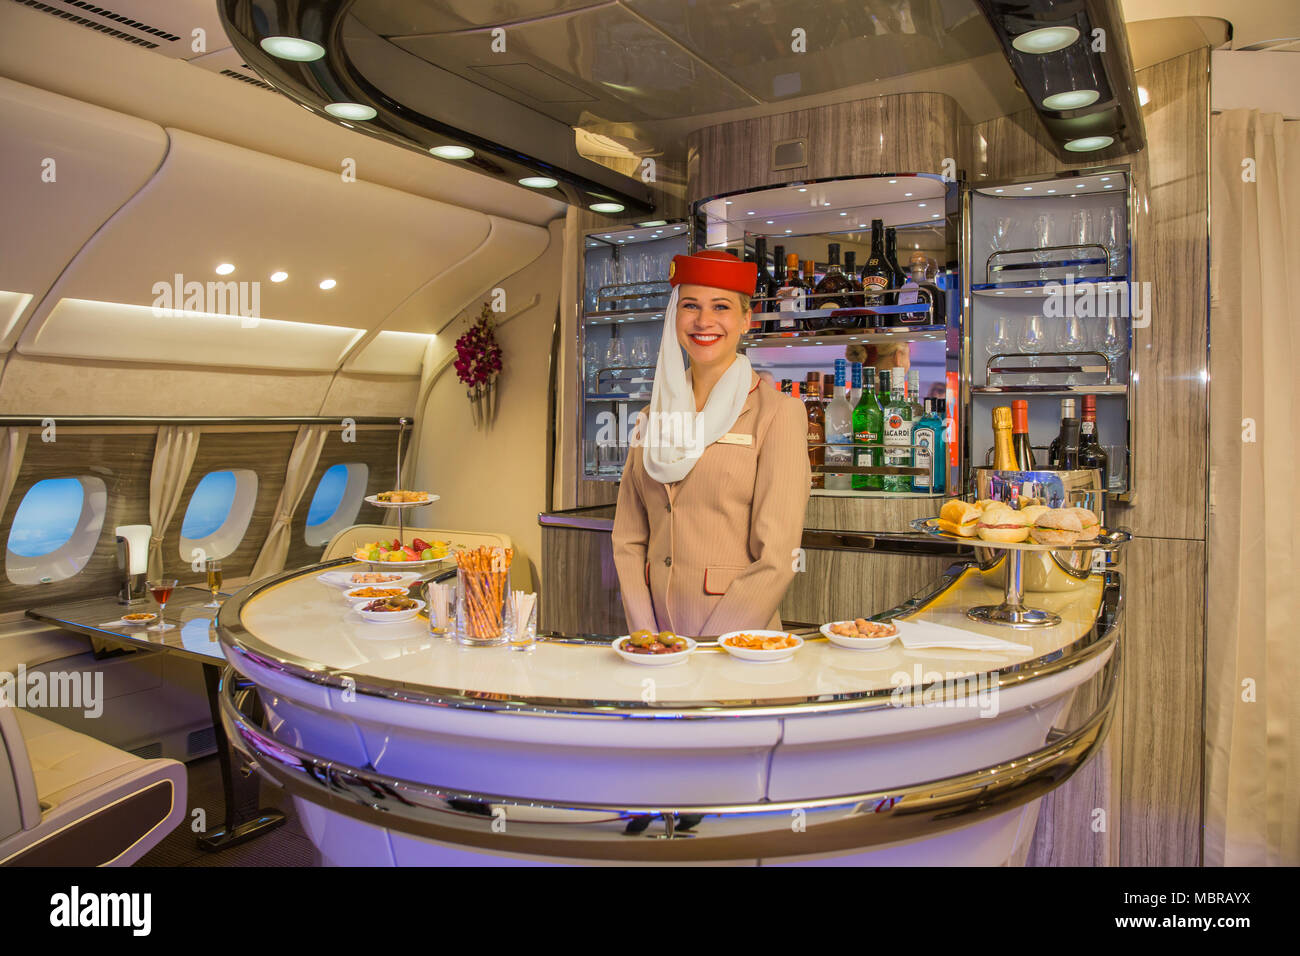 Emirates Airline présente de nouvelles on-board bar pour l'Airbus A380, Salon international du tourisme ITB, Berlin, Allemagne Banque D'Images